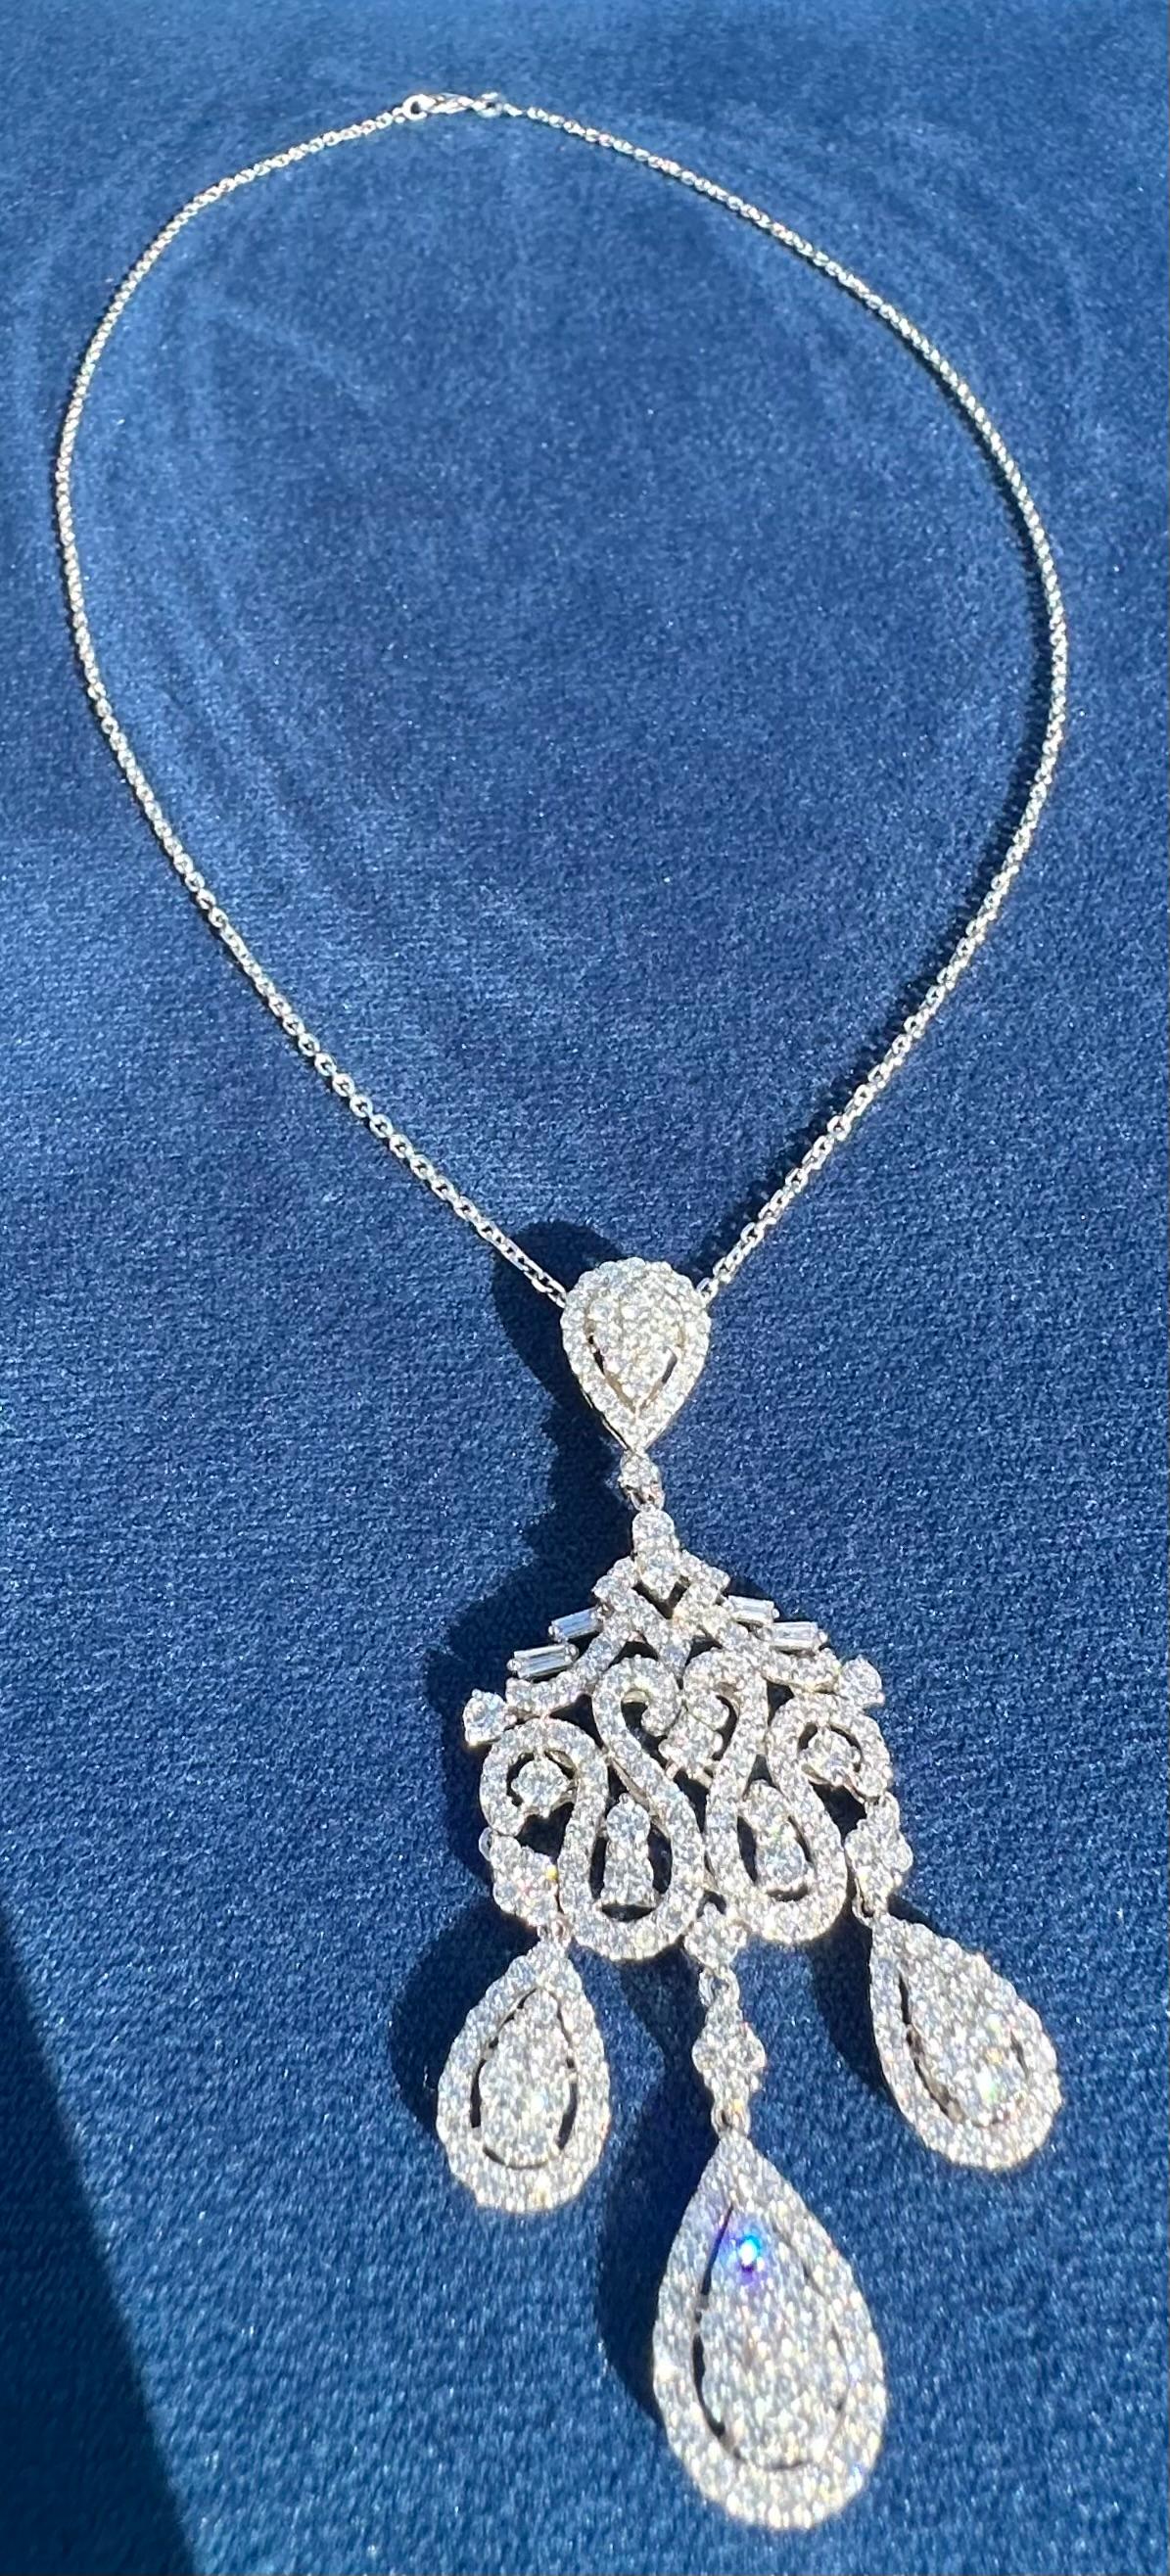 Exquisite 18 Karat White Gold 9.76 Carat Diamond Chandelier Pendant Necklace  For Sale 3